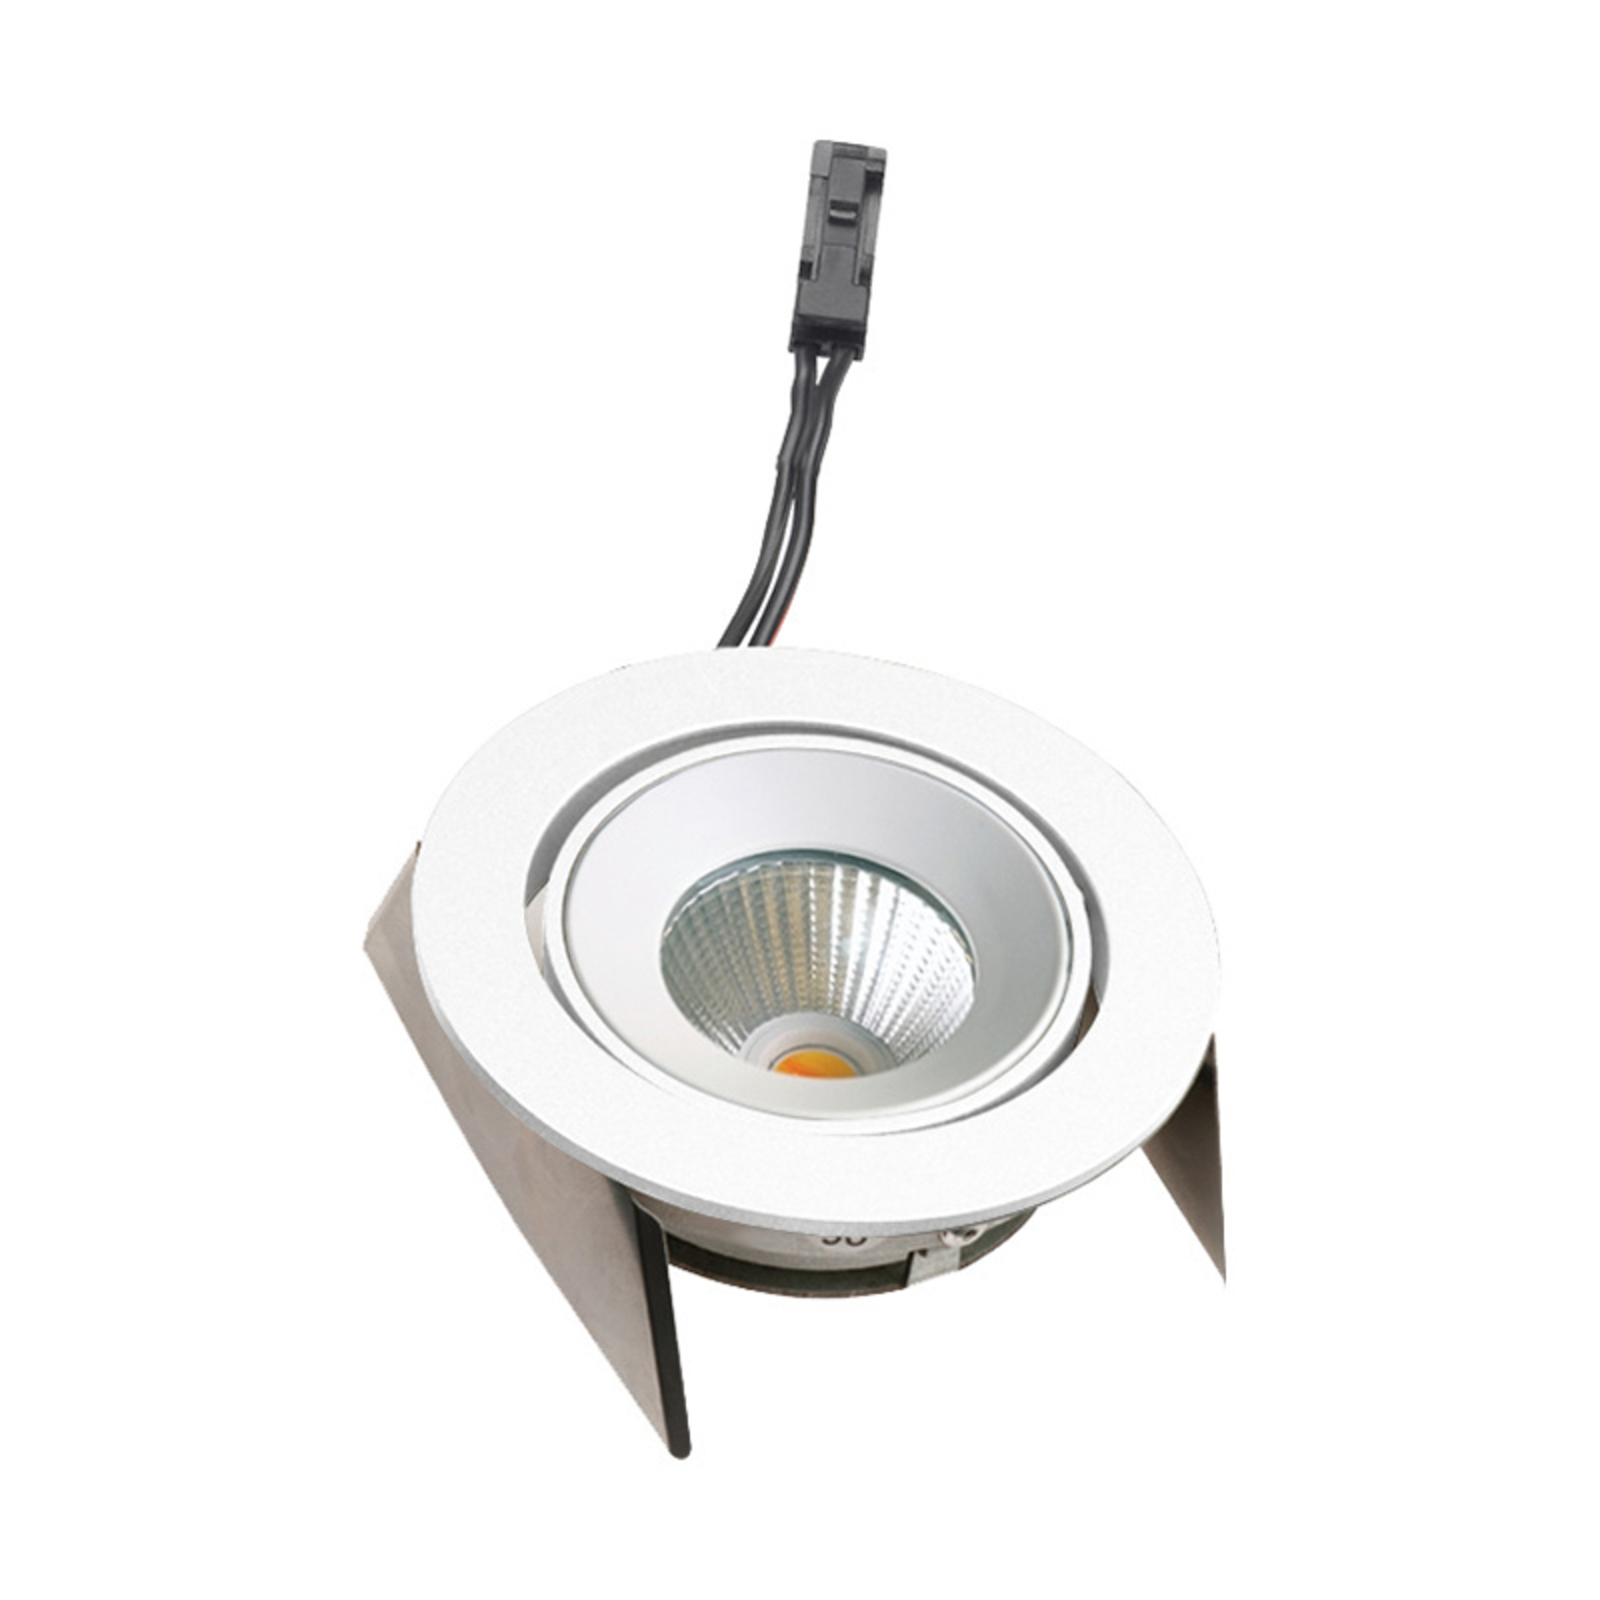 LED-innfellingslampe SR 68 43° dim-til-varm, hvit